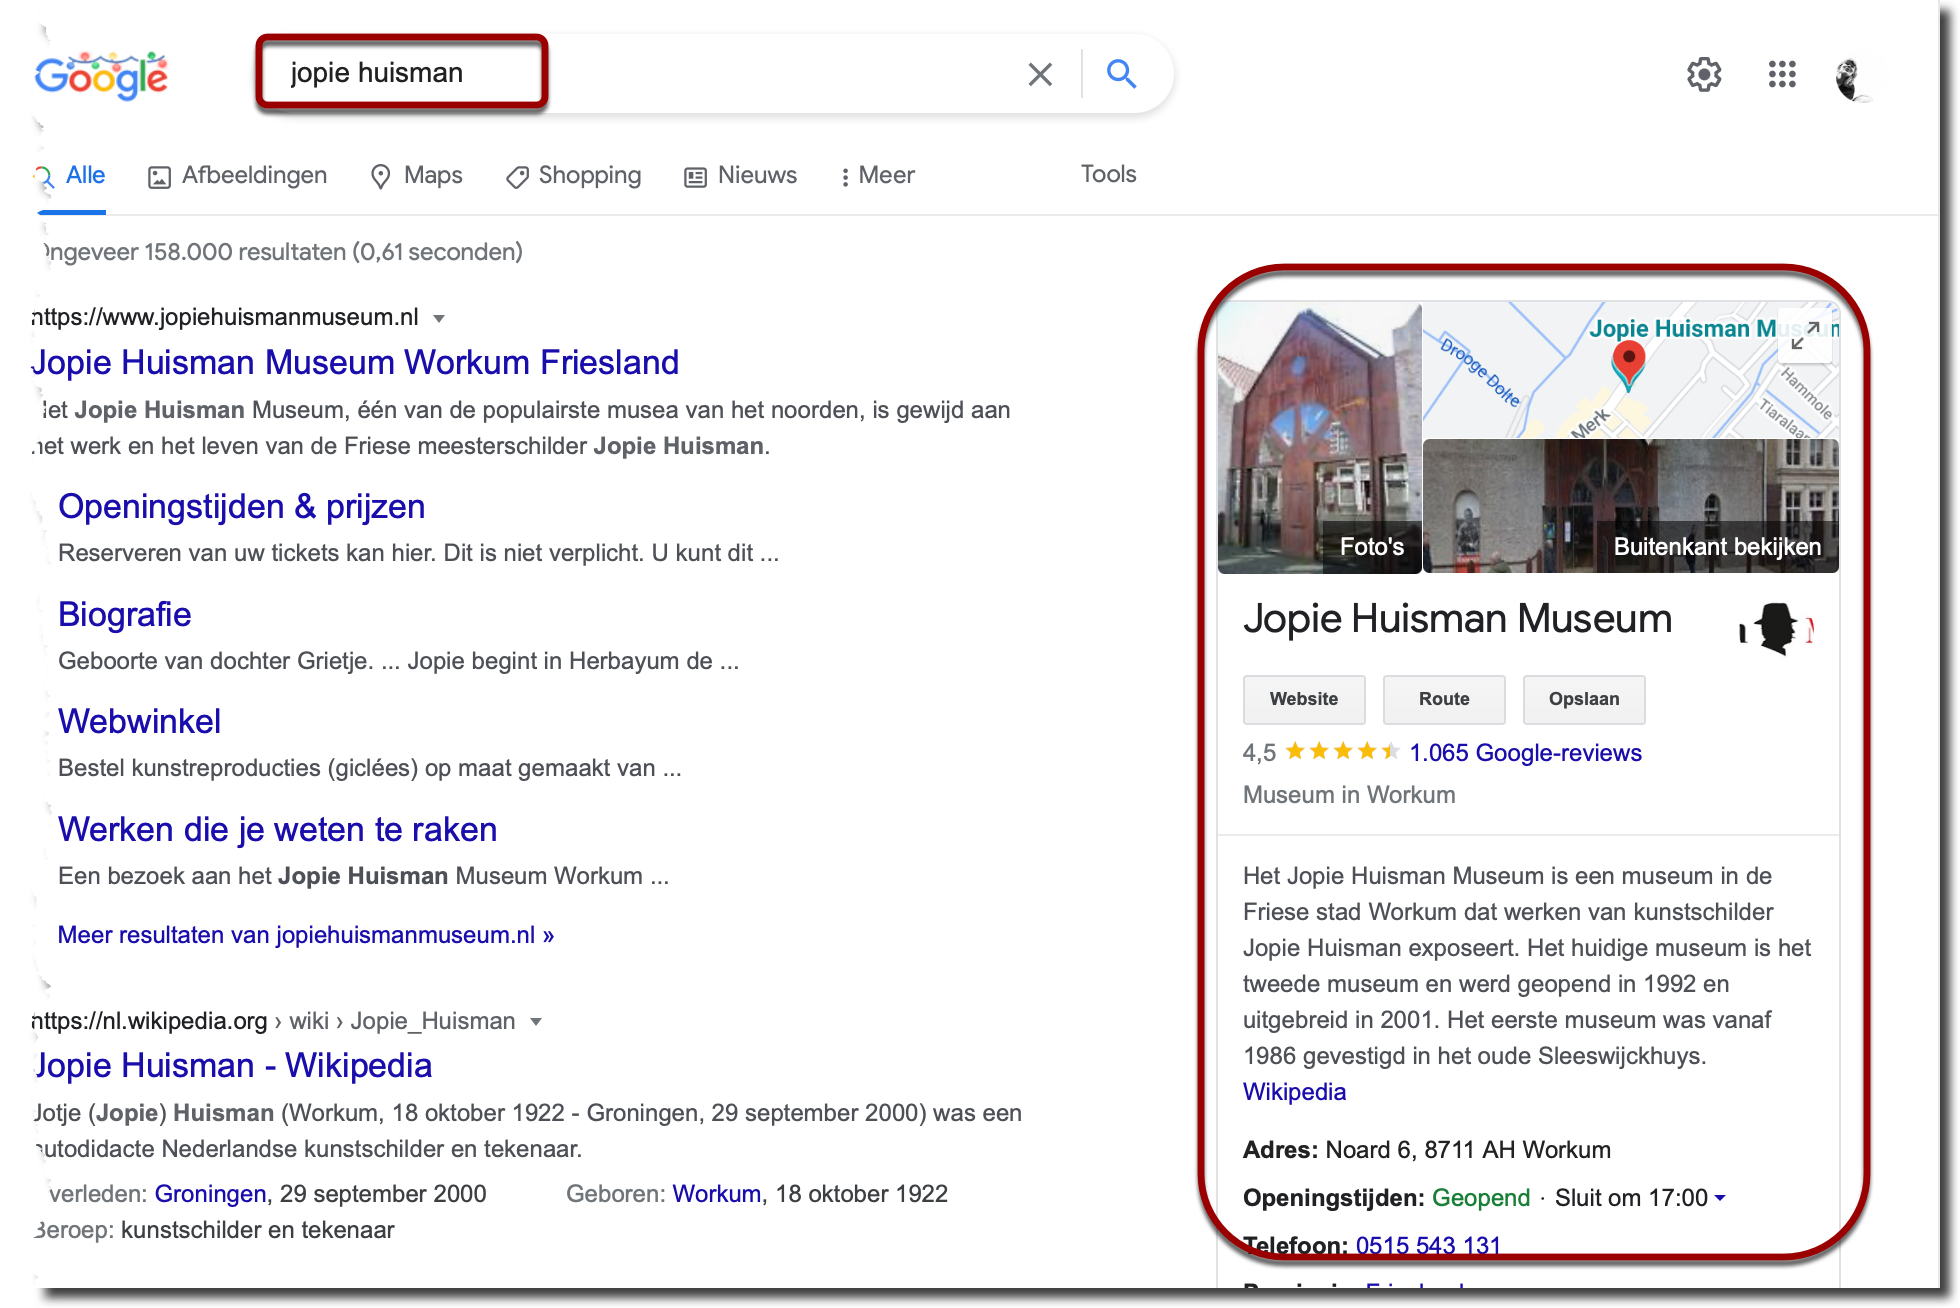 Google Knowledge panel aan de rechterkant van het scherm n.a.v. de zoekopdracht 'Jopie Huisman' 